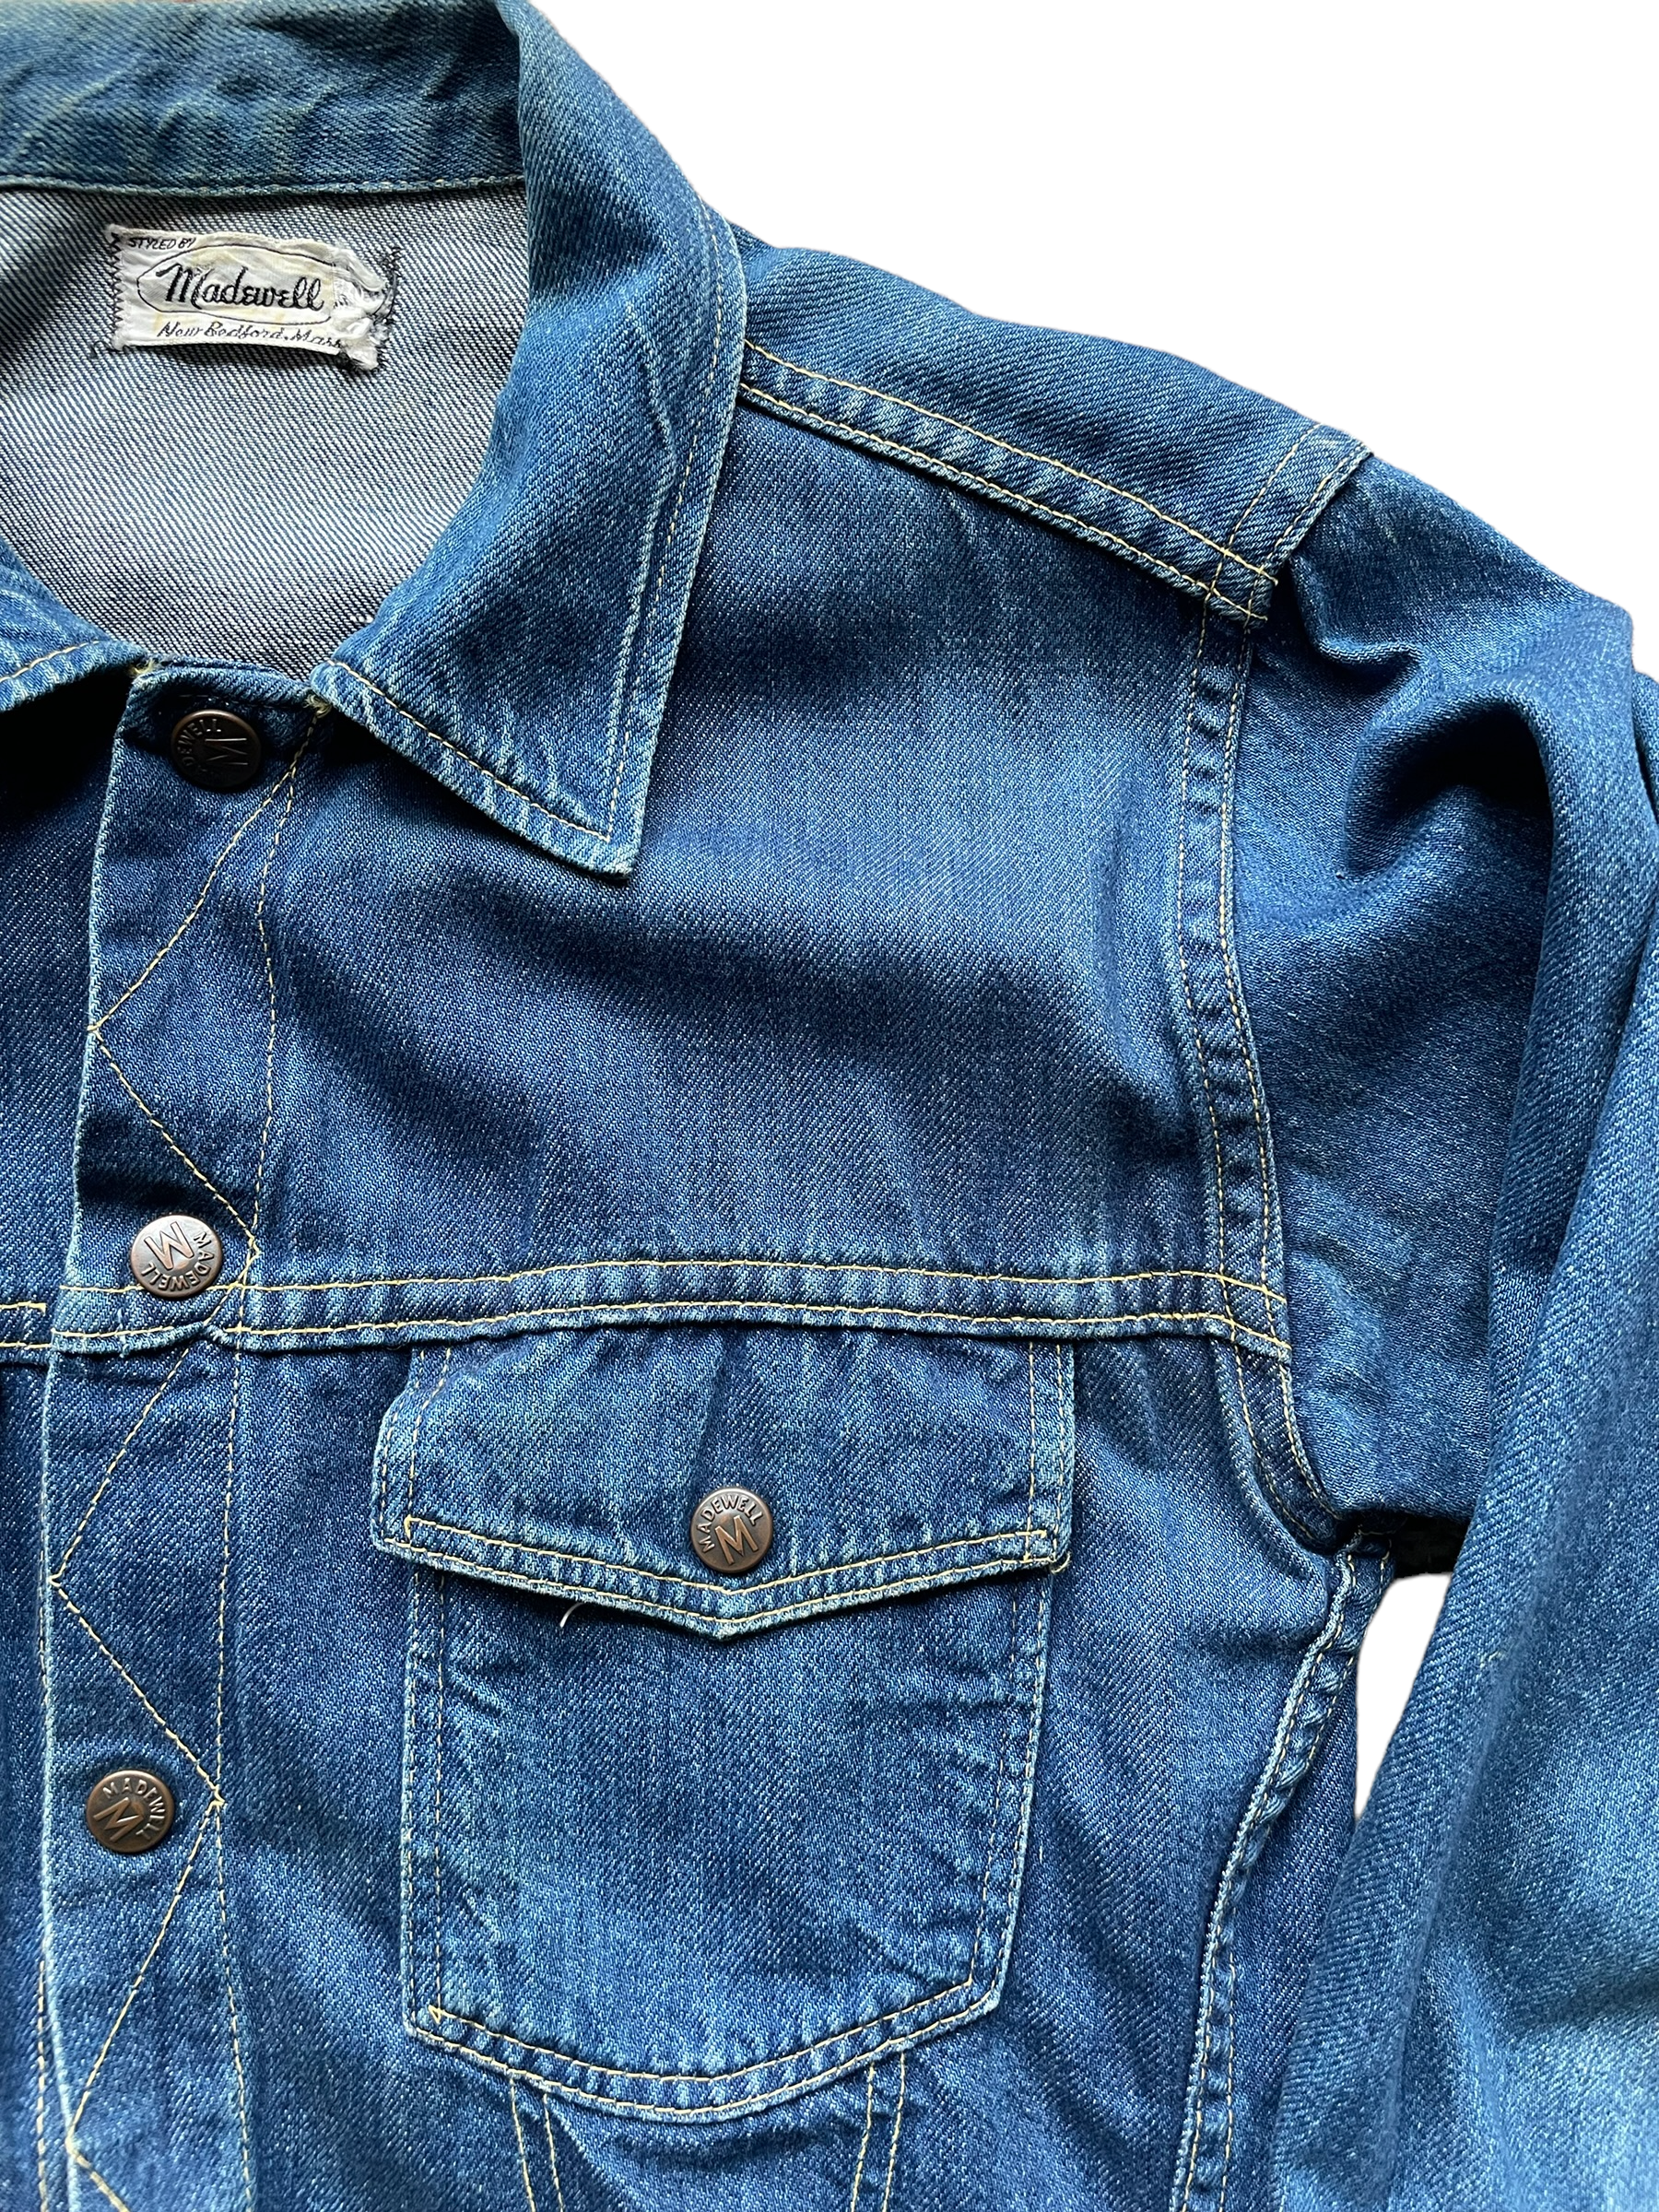 Upper Left Front Shoulder View of Vintage Madewell Selvedge Denim Jacket | Barn Owl Vintage | Seattle Vintage Workwear Clothing